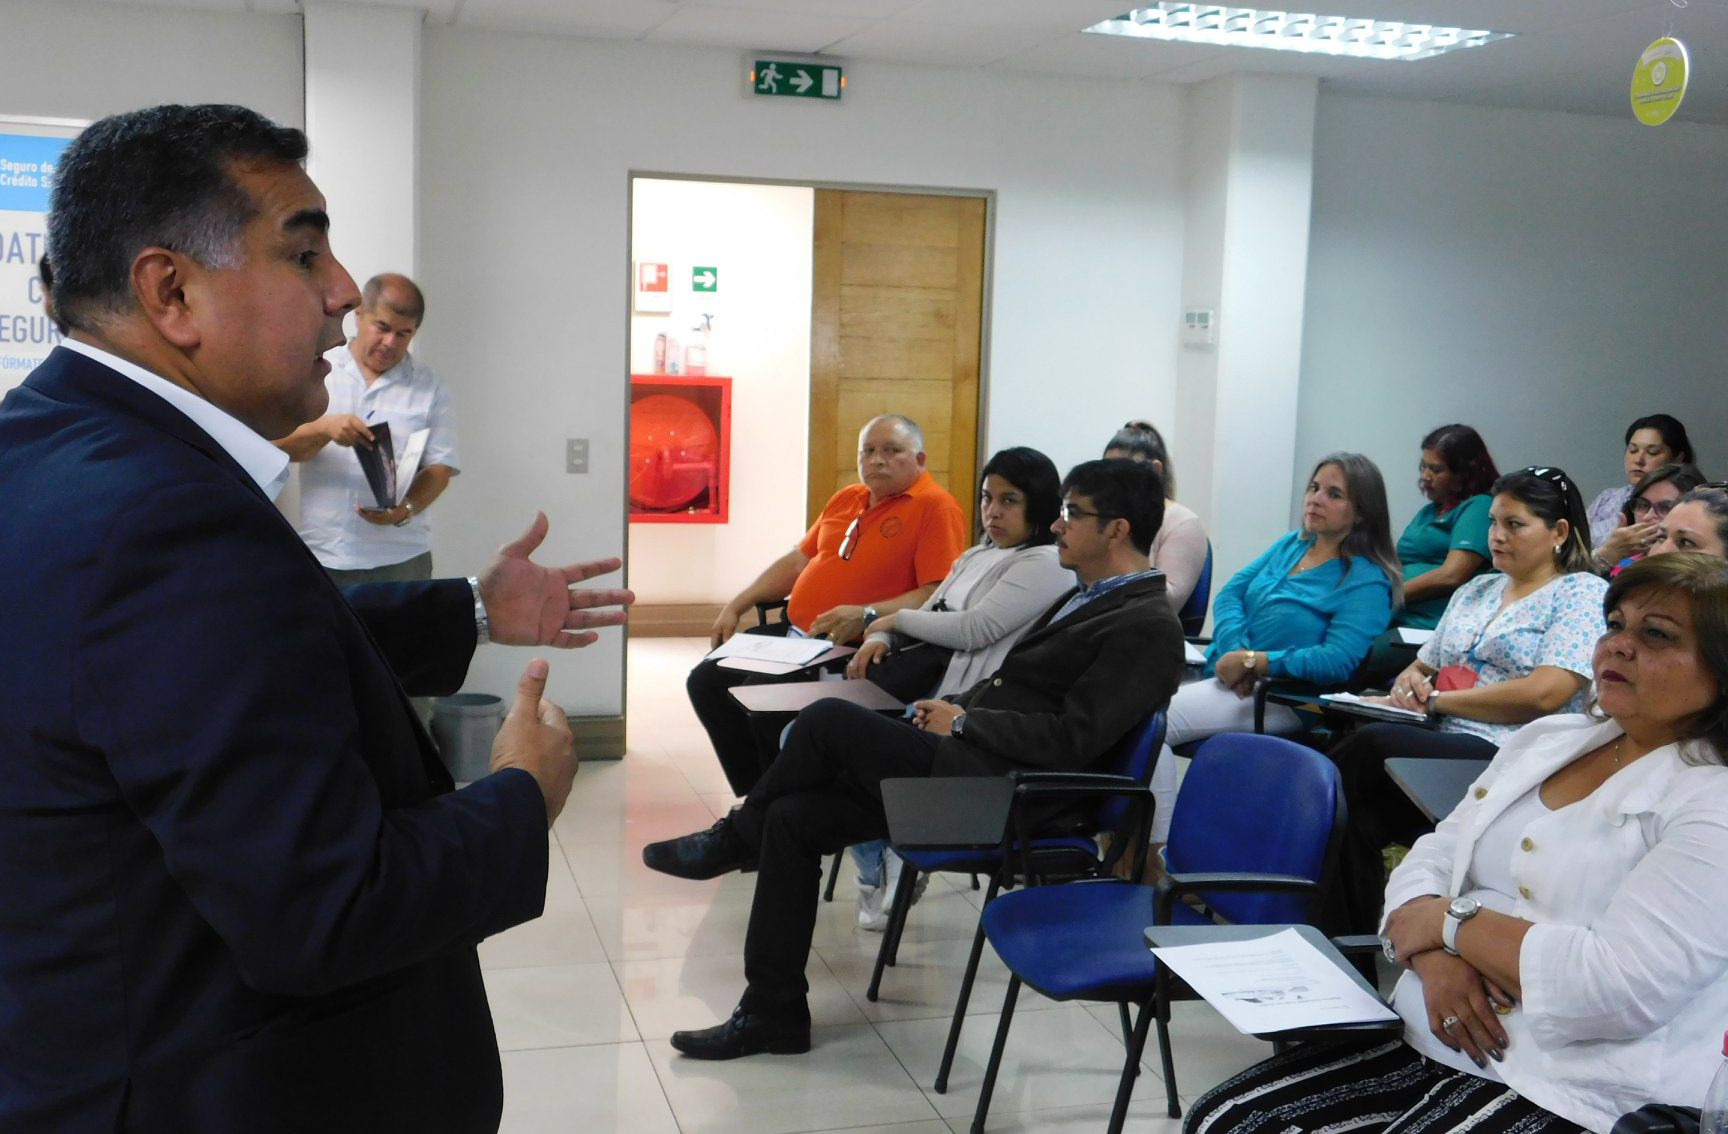 Visita a la Oficina de Defensa Laboral de Tarapacá realiza charlas sobre Derechos Fundamentales